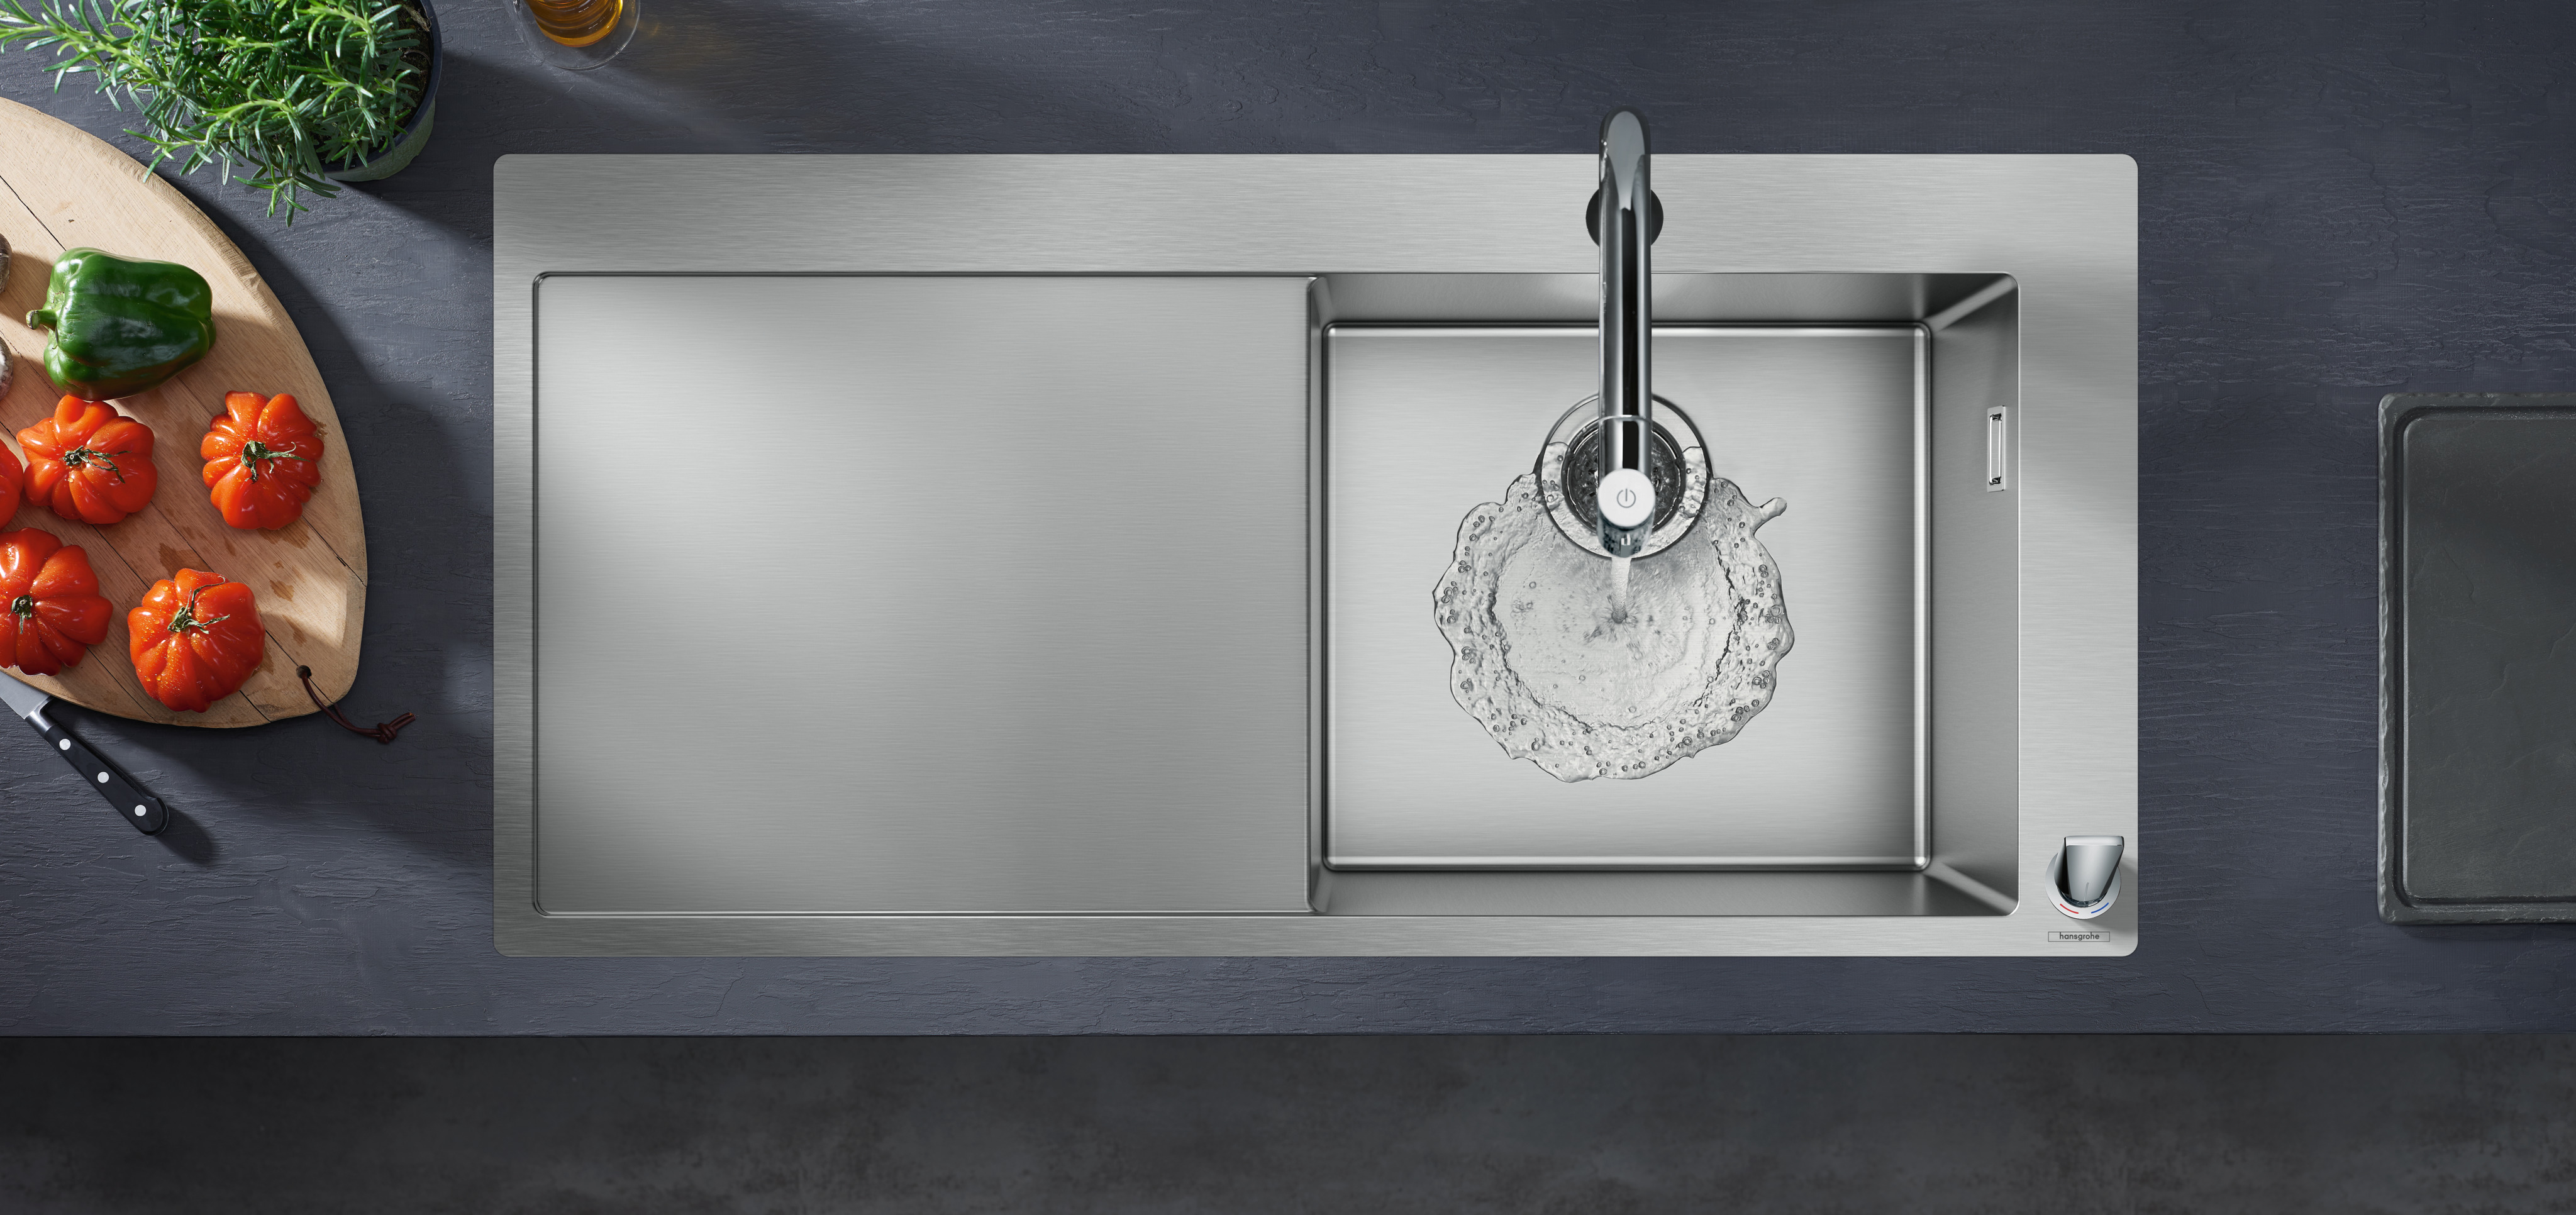 Кухонная мойка с встроенным смесителем Hansgrohe C71-F450-07 43205800, под сталь